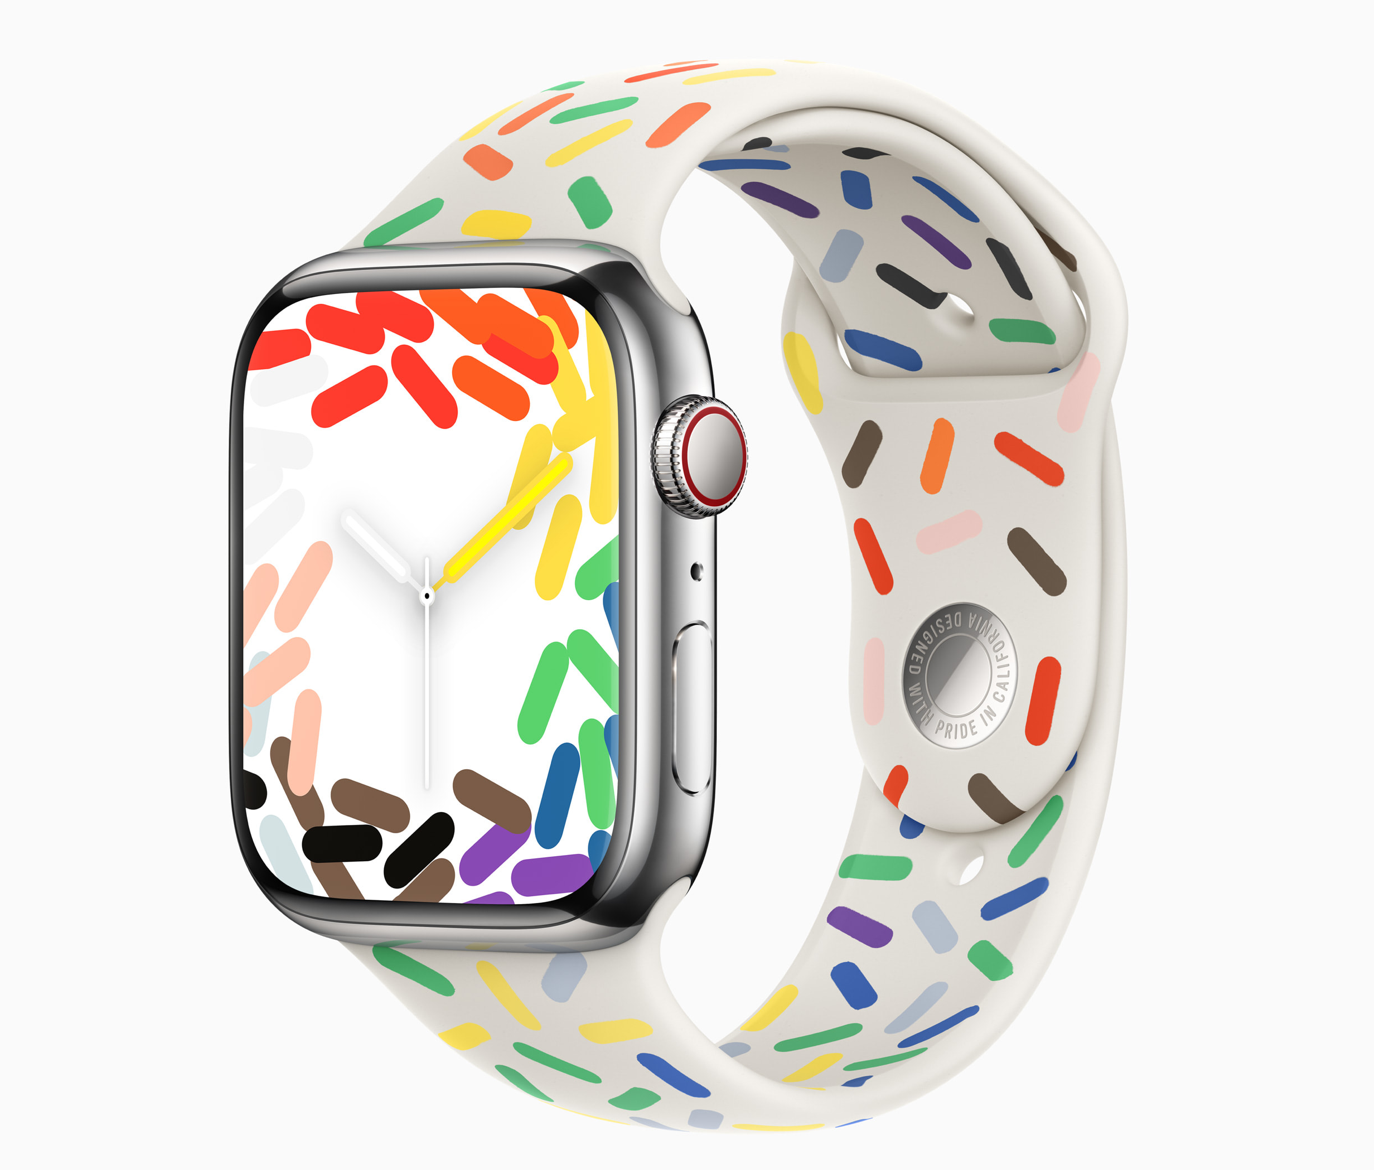 苹果为 Apple Watch 推出全新彩虹表盘及运动型表带